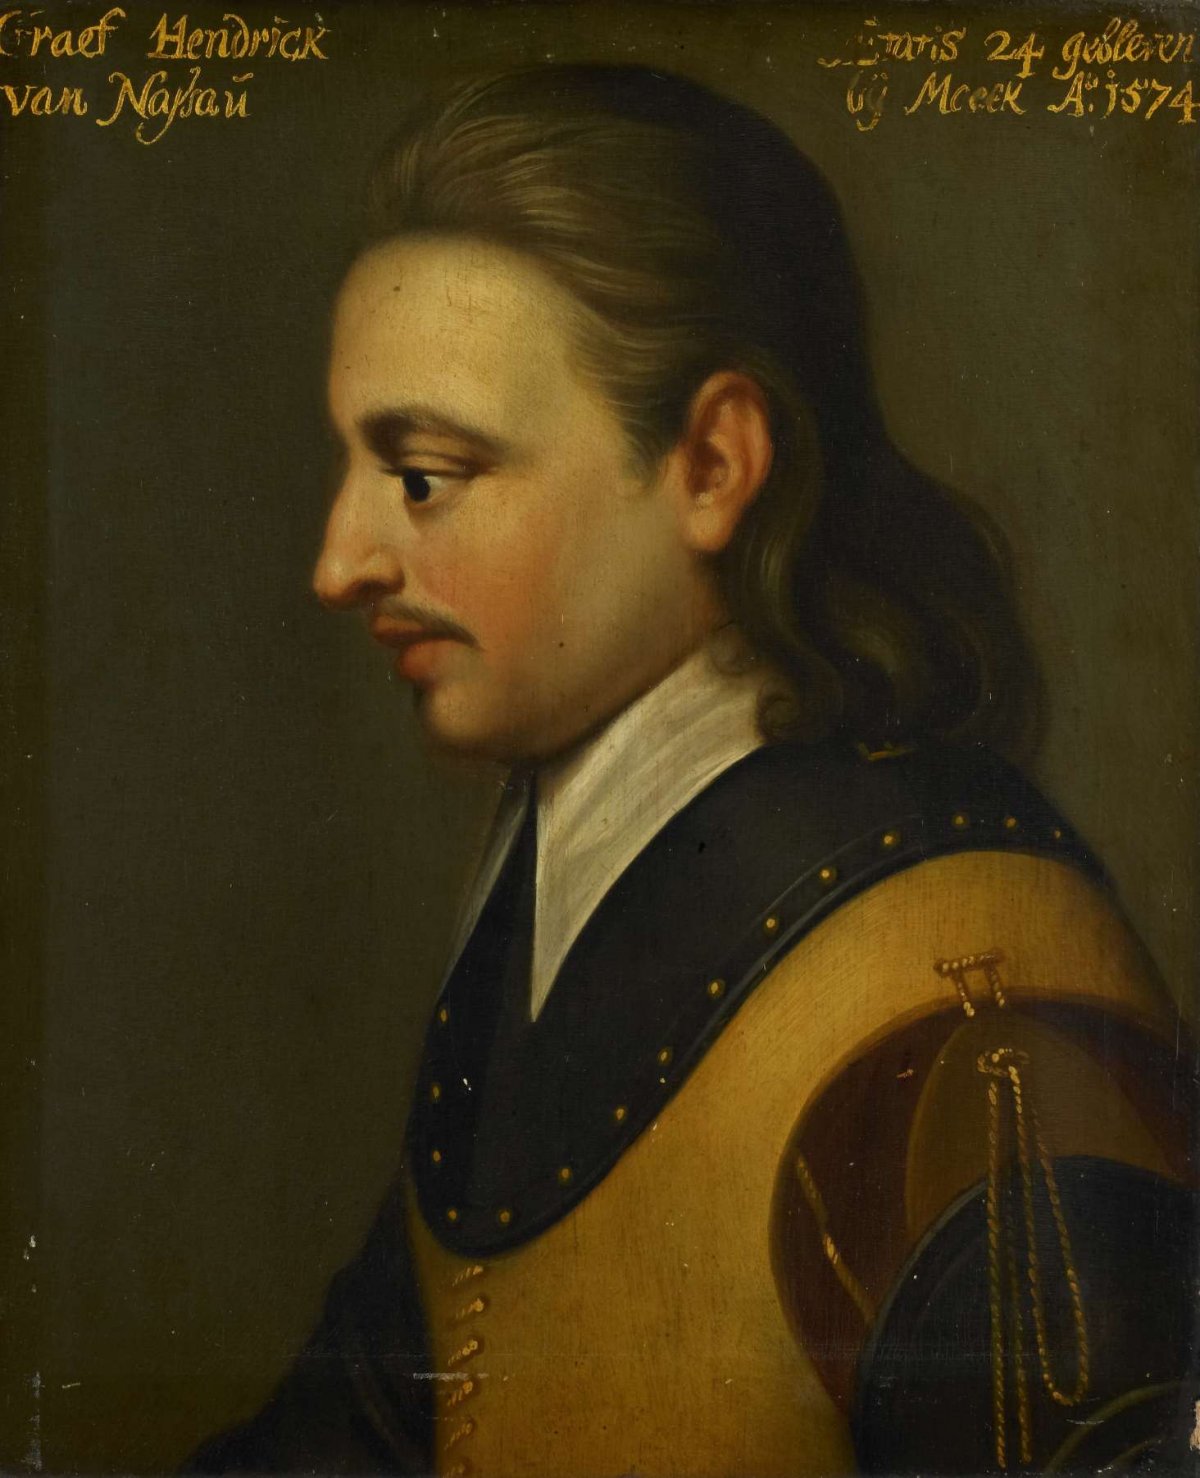 Portrait of Hendrik (1550-74), Count of Nassau, Wybrand de Geest, c. 1633 - c. 1635